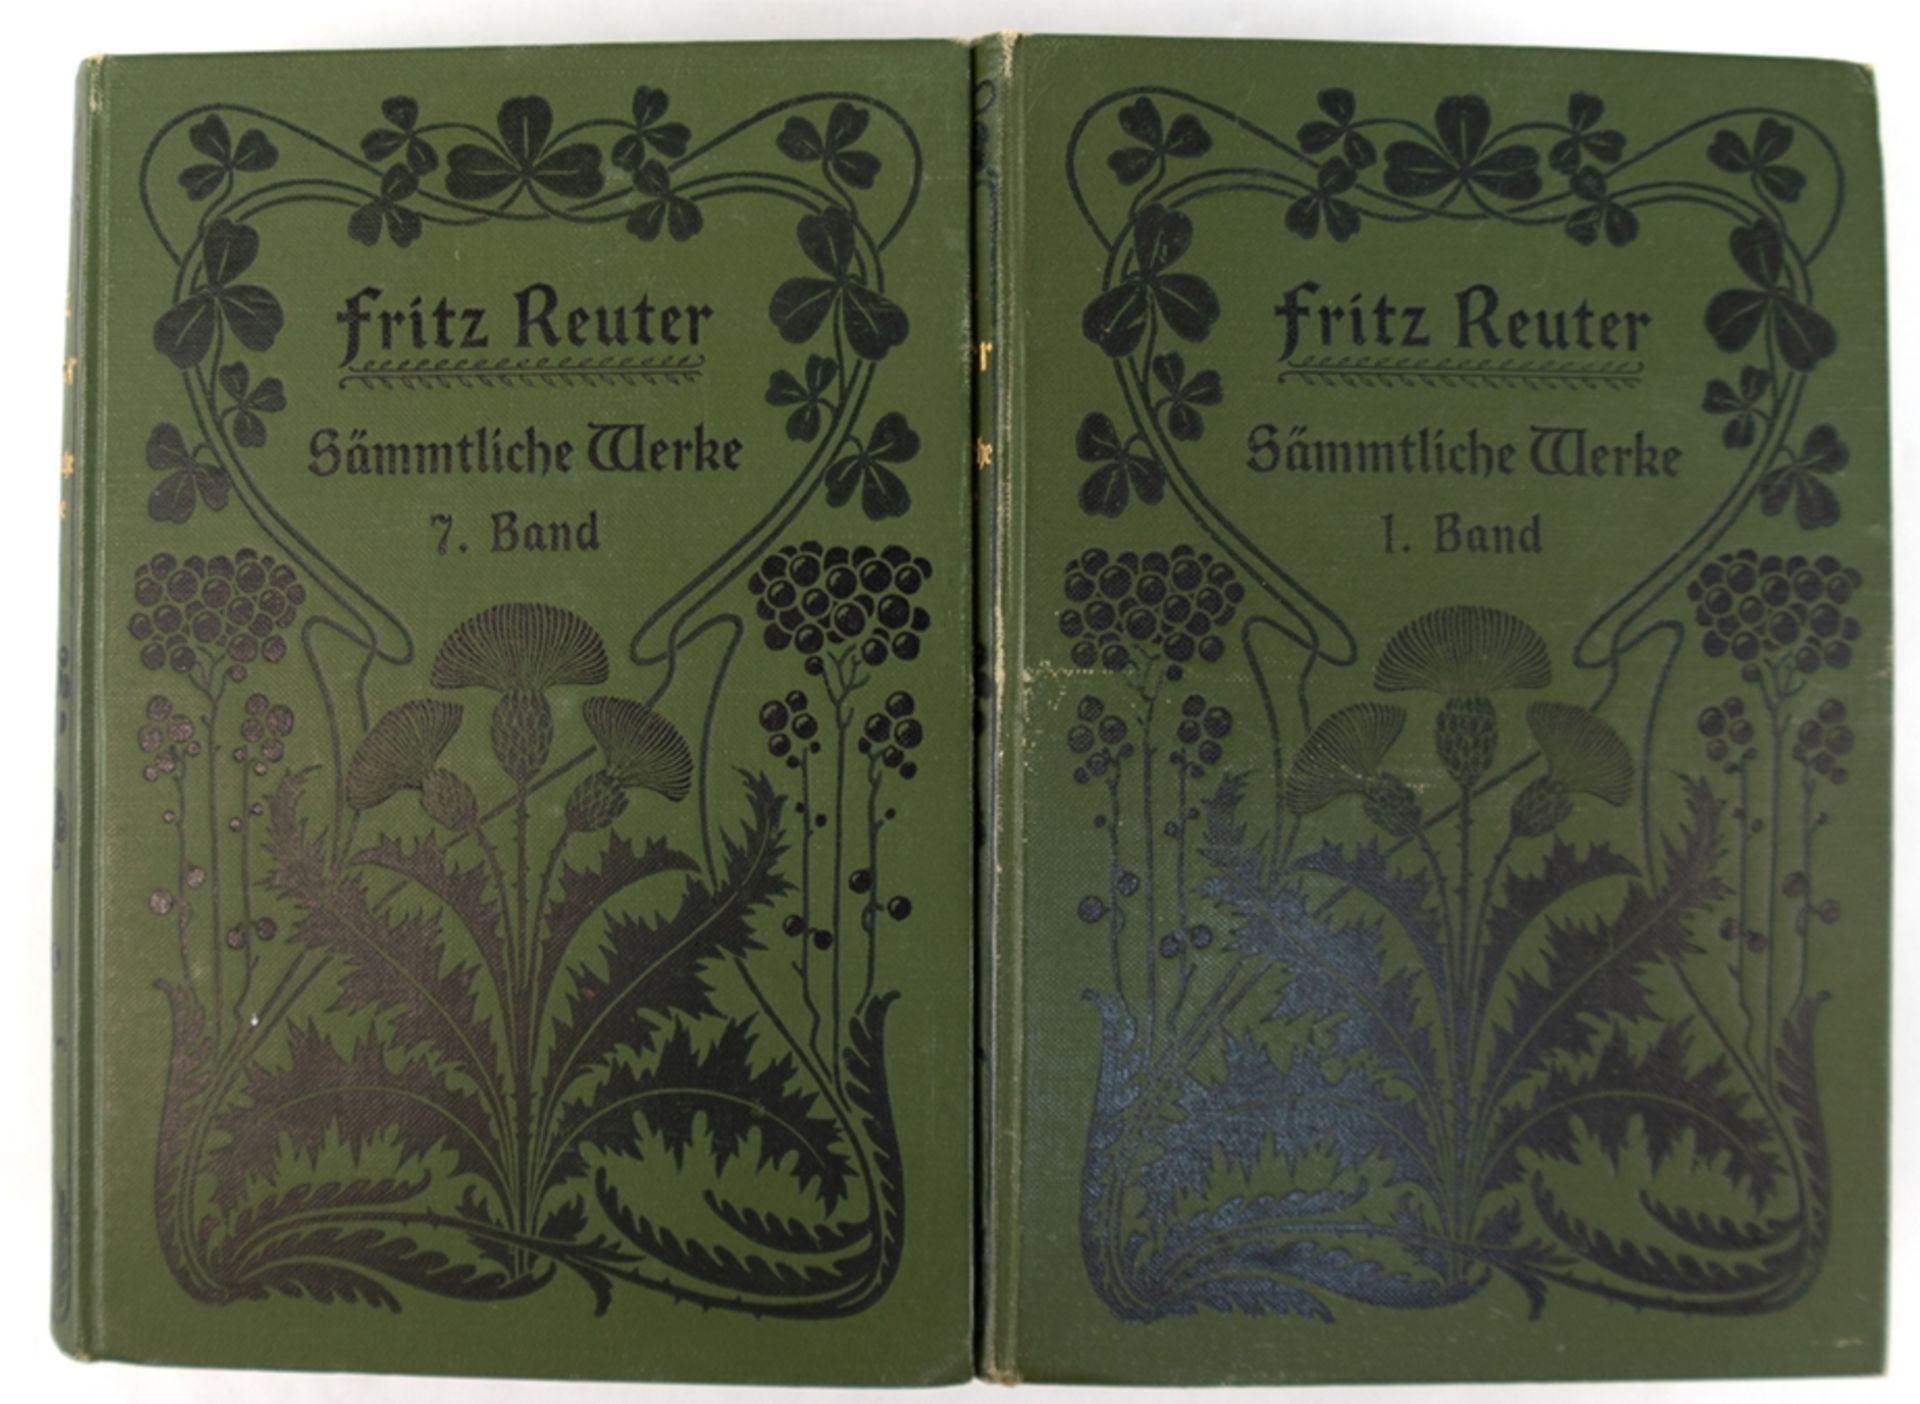 Fritz Reuter "Sämmtliche Werke", Neue wohlfeine Volksausgabe in 8 Bänden, Wismar, Hintorff'sche Hof